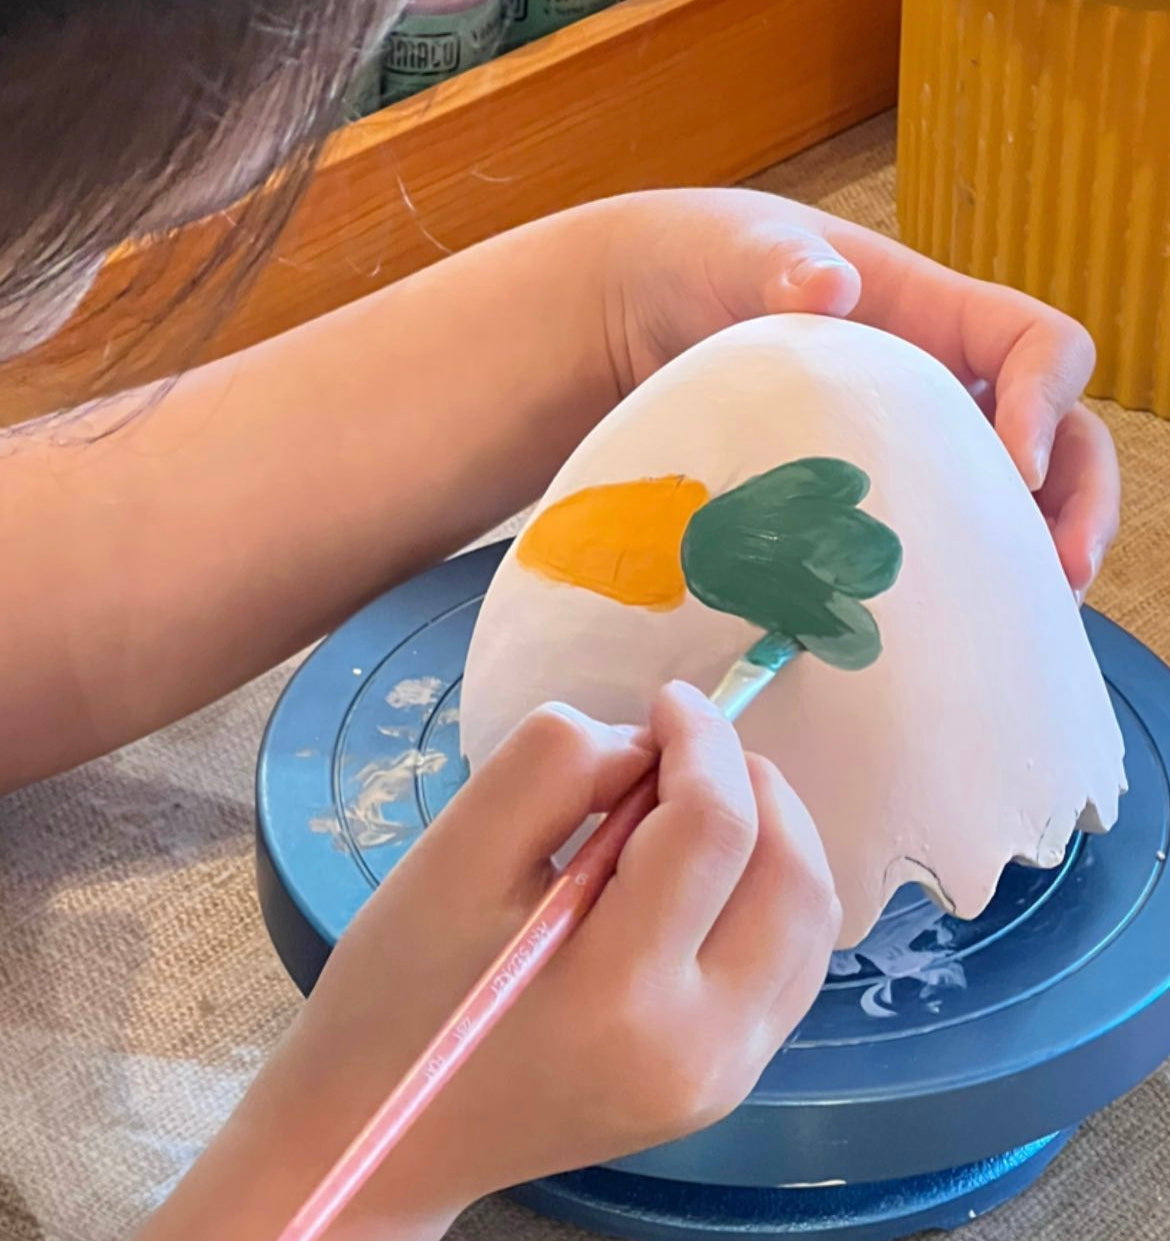 體驗 Trial【兒童陶藝班 Kids Ceramic Art Class】